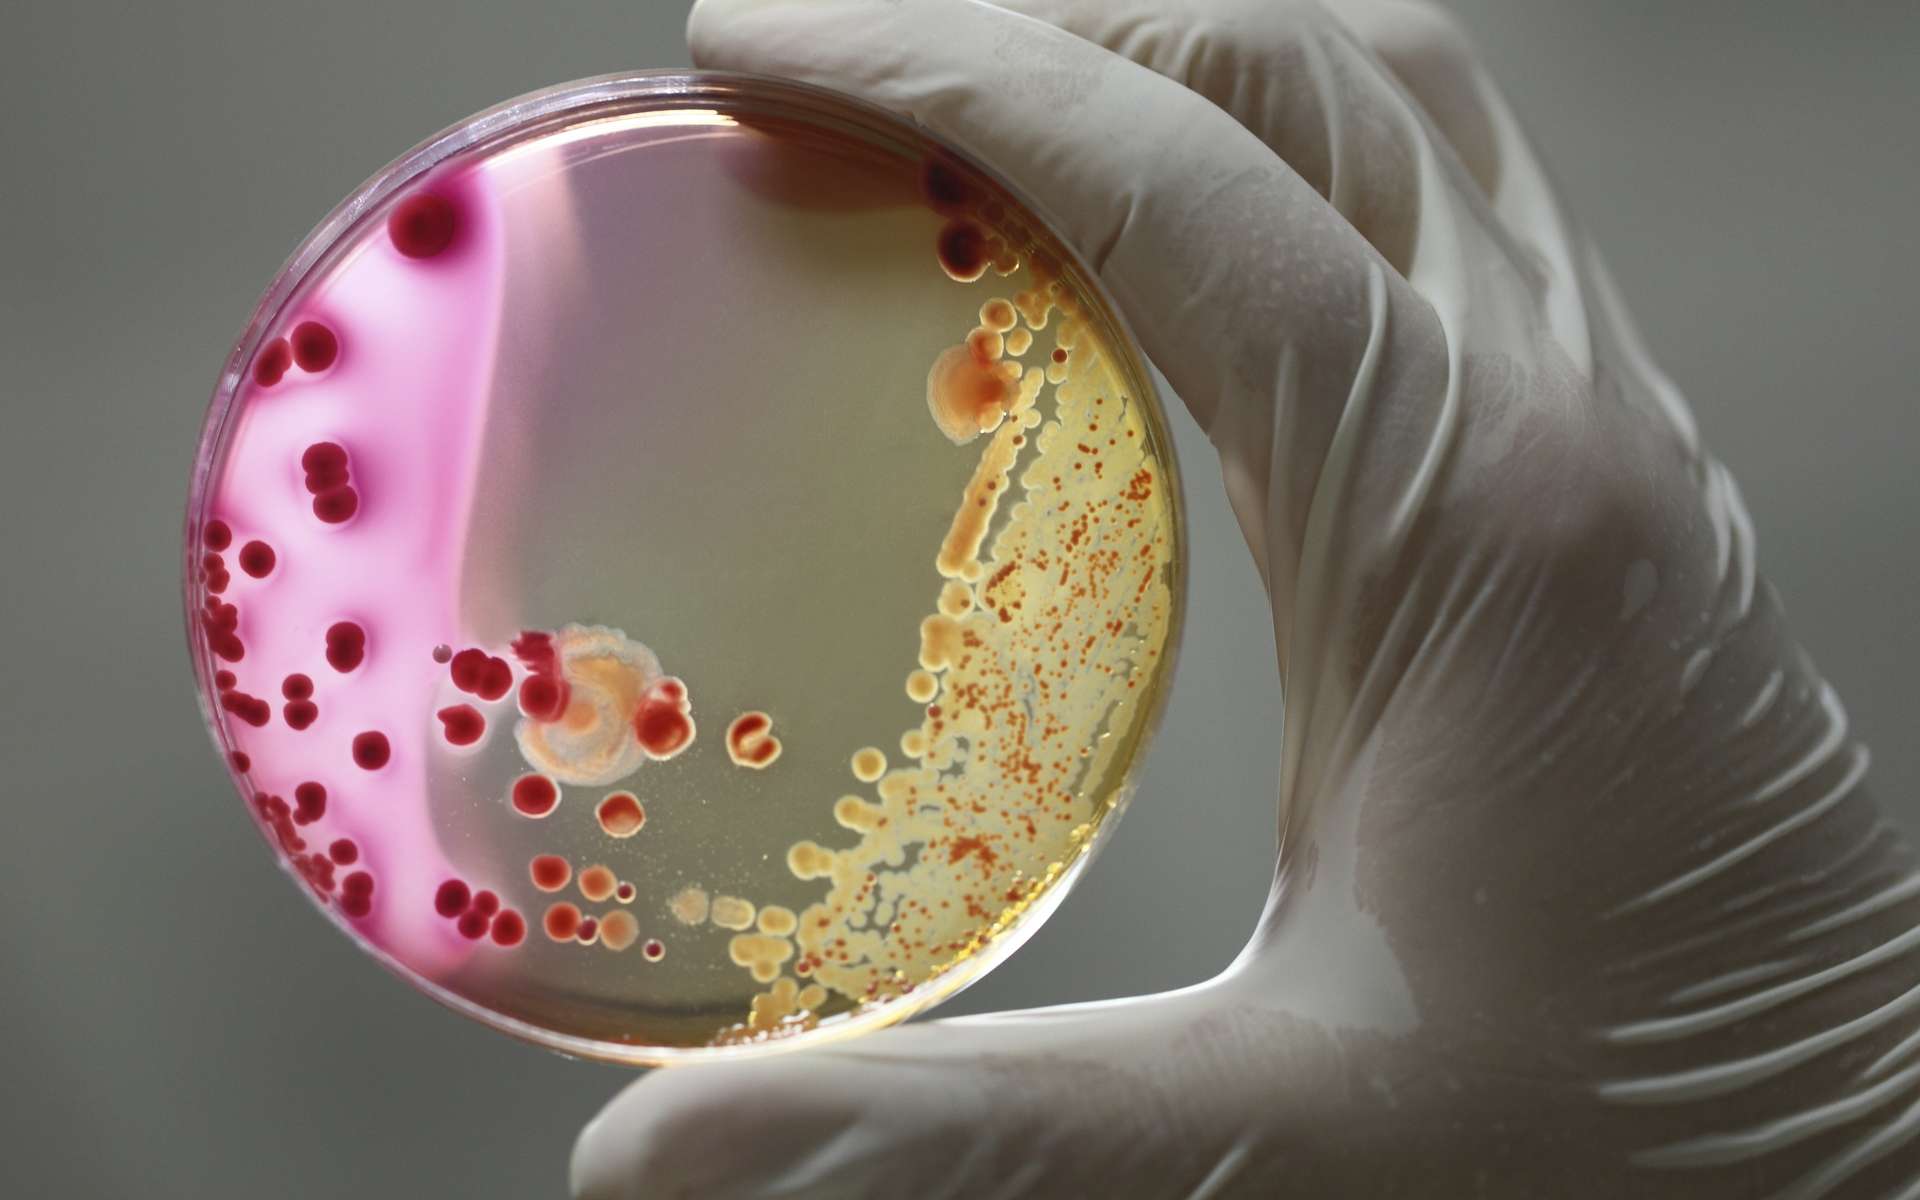 Bactérie Escherichia coli : les autorités sanitaires insistent sur la prévention